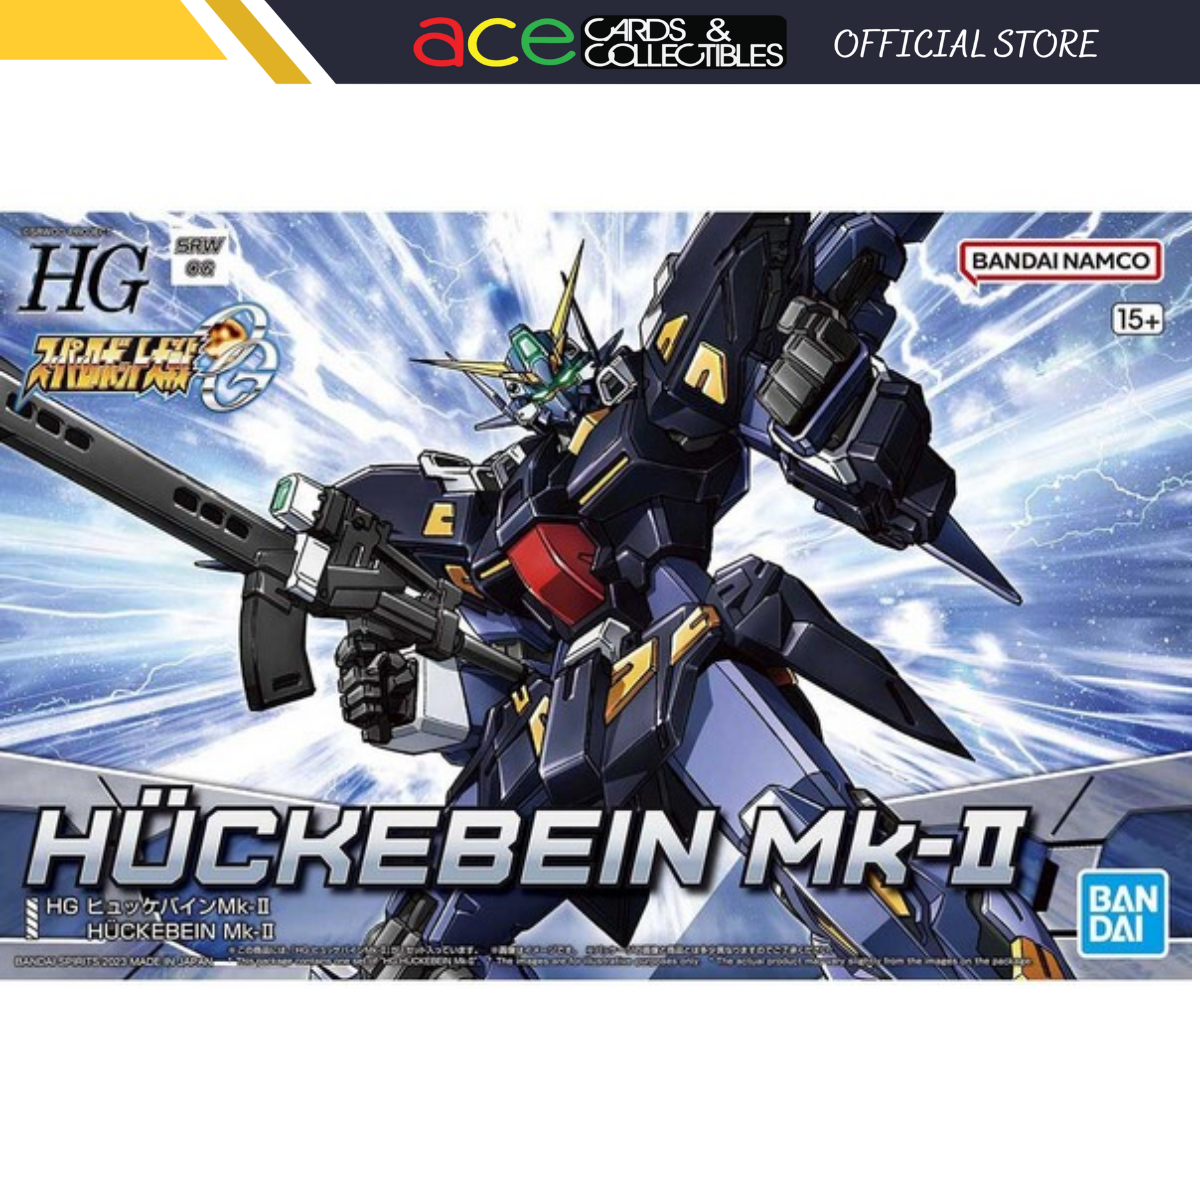 Gunpla HG Huckebein MK-II-Bandai-Ace Cards & Collectibles